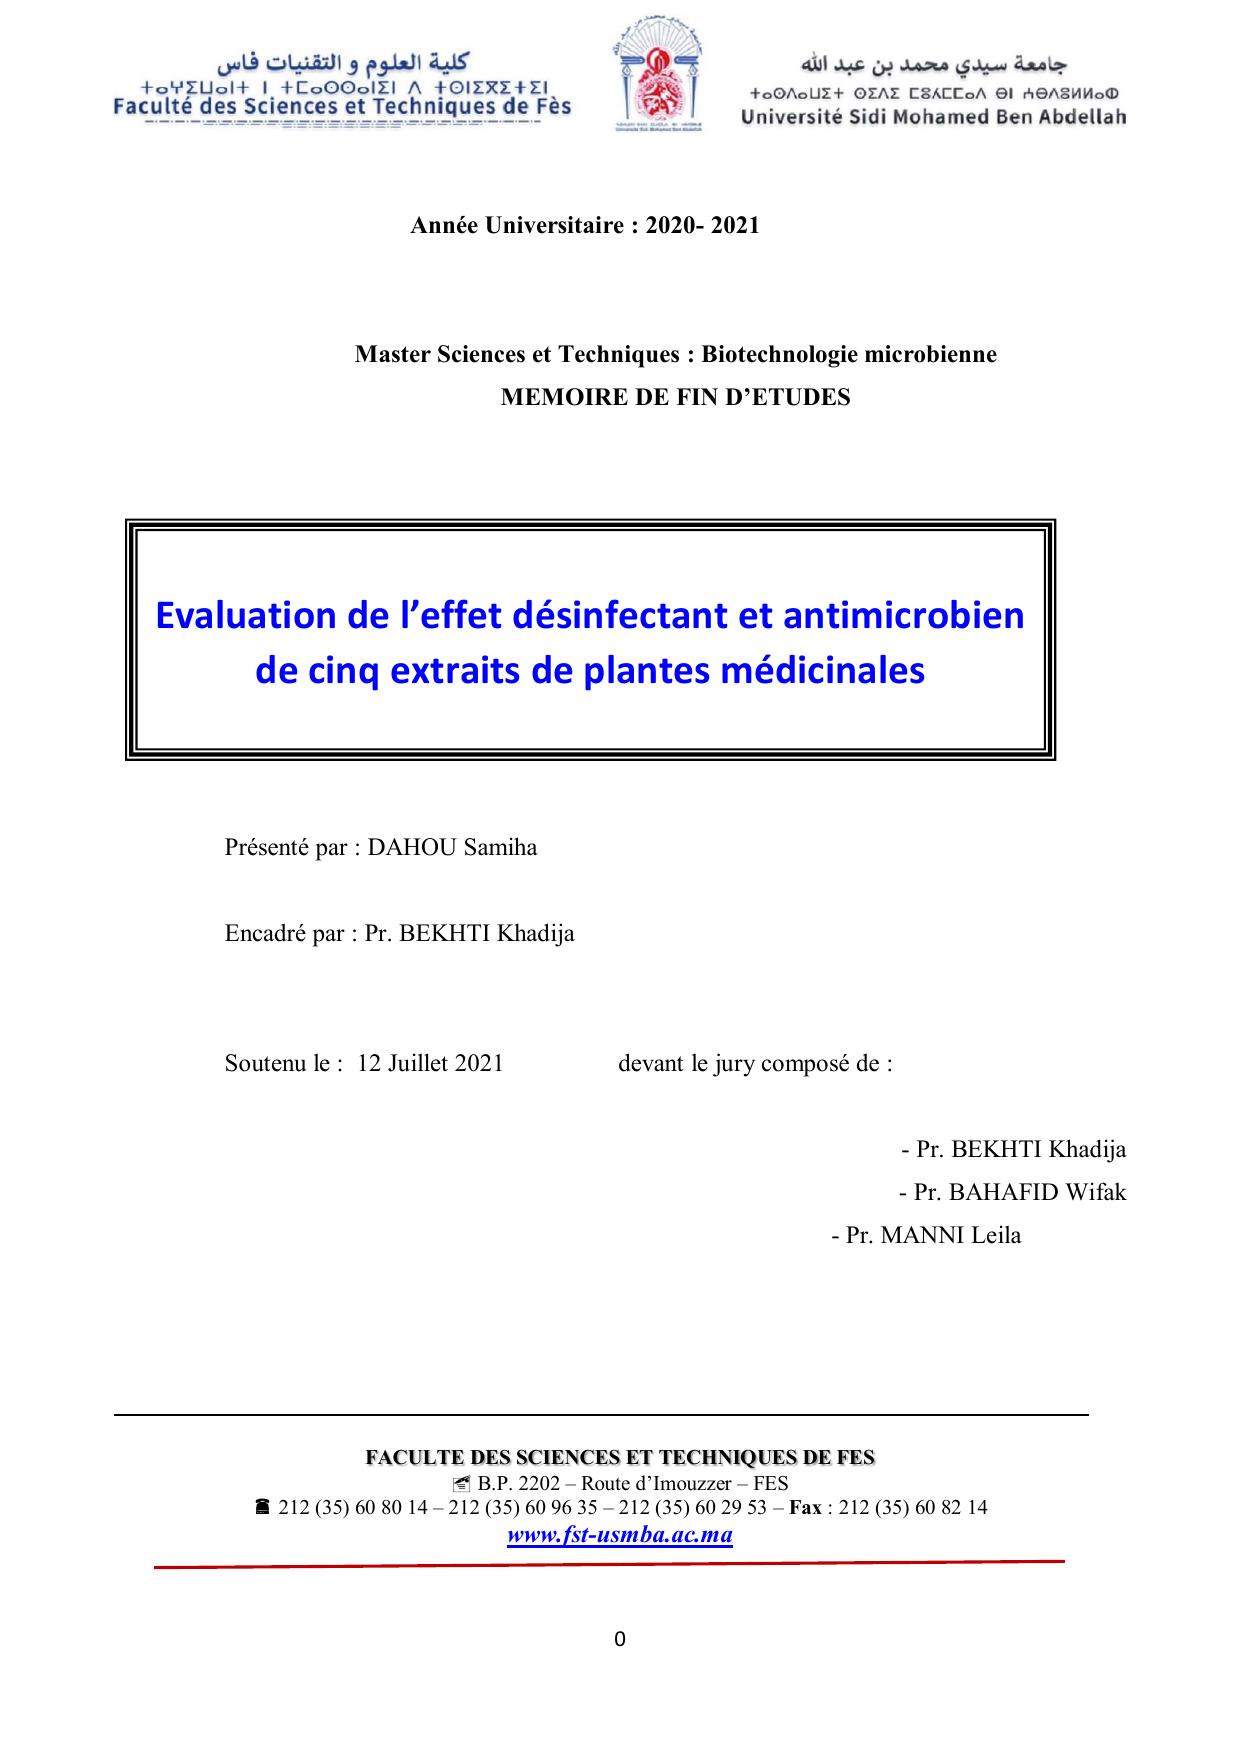 Evaluation de l’effet désinfectant et antimicrobien de cinq extraits de plantes médicinales